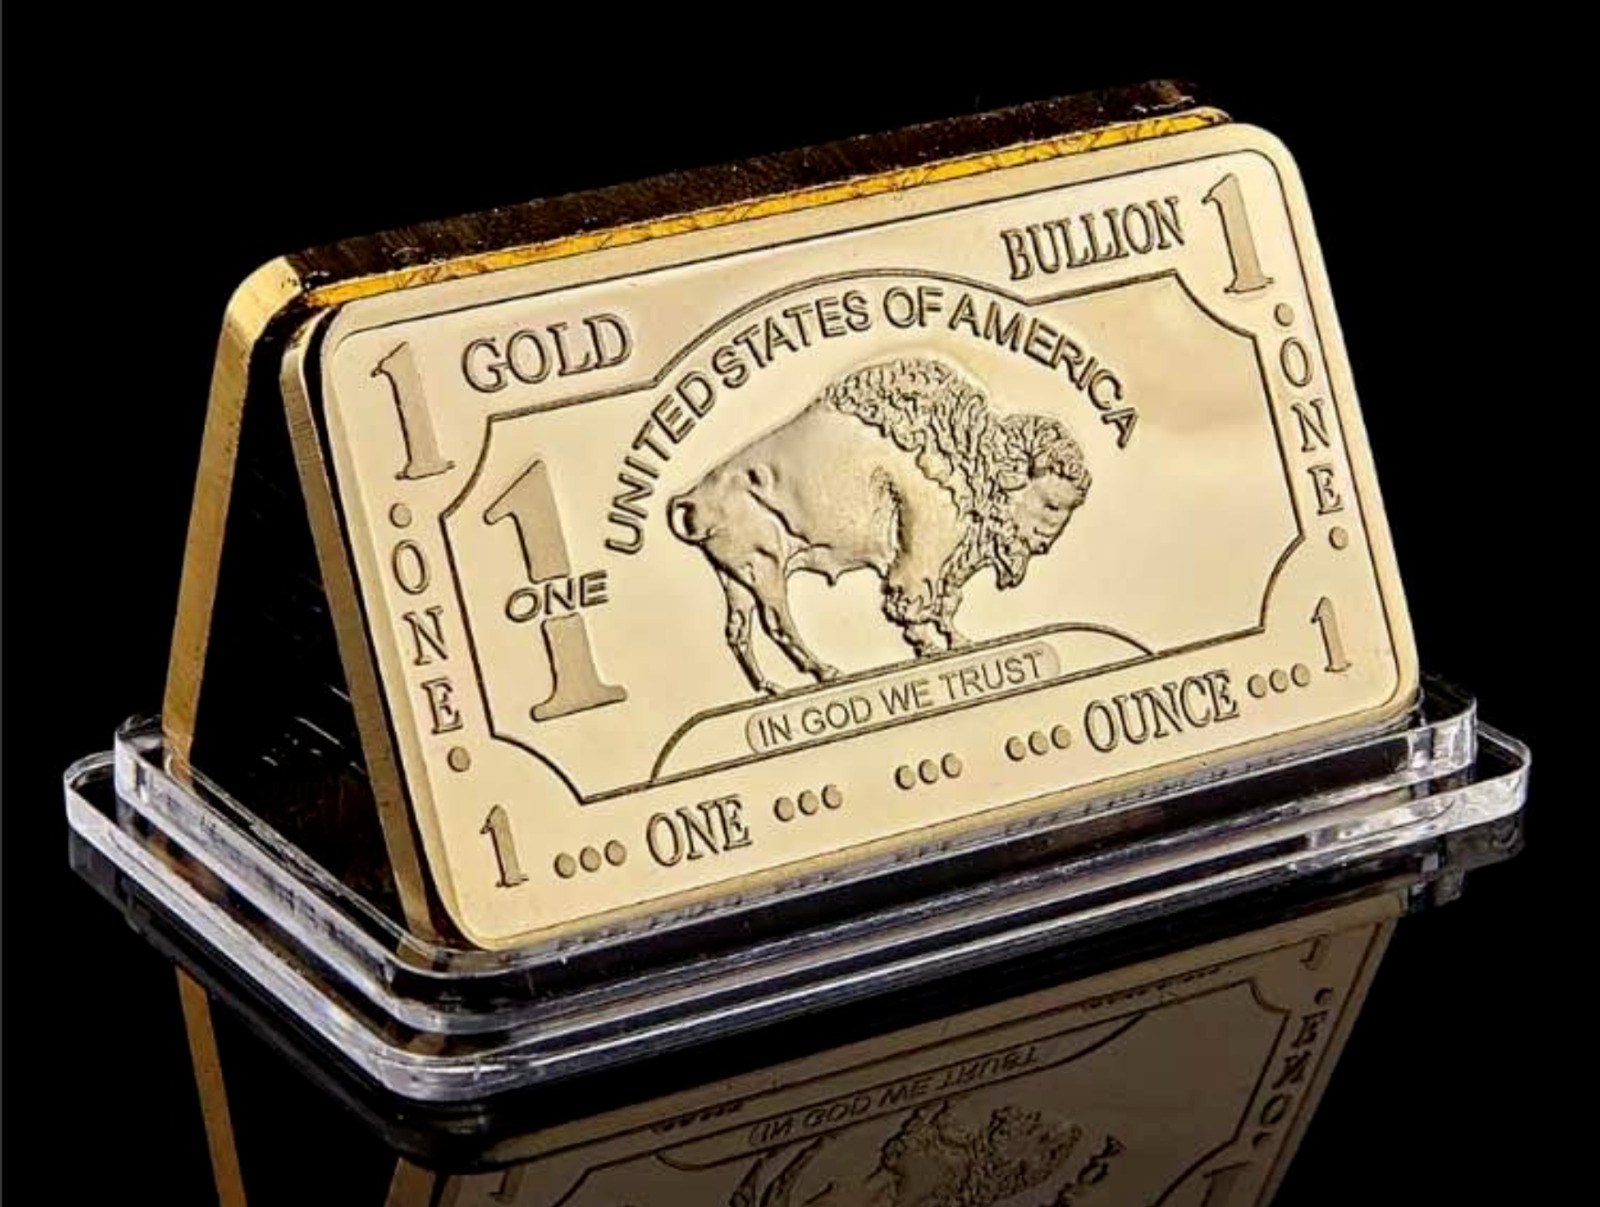 1 oz 24K Gold Buffalo Bar